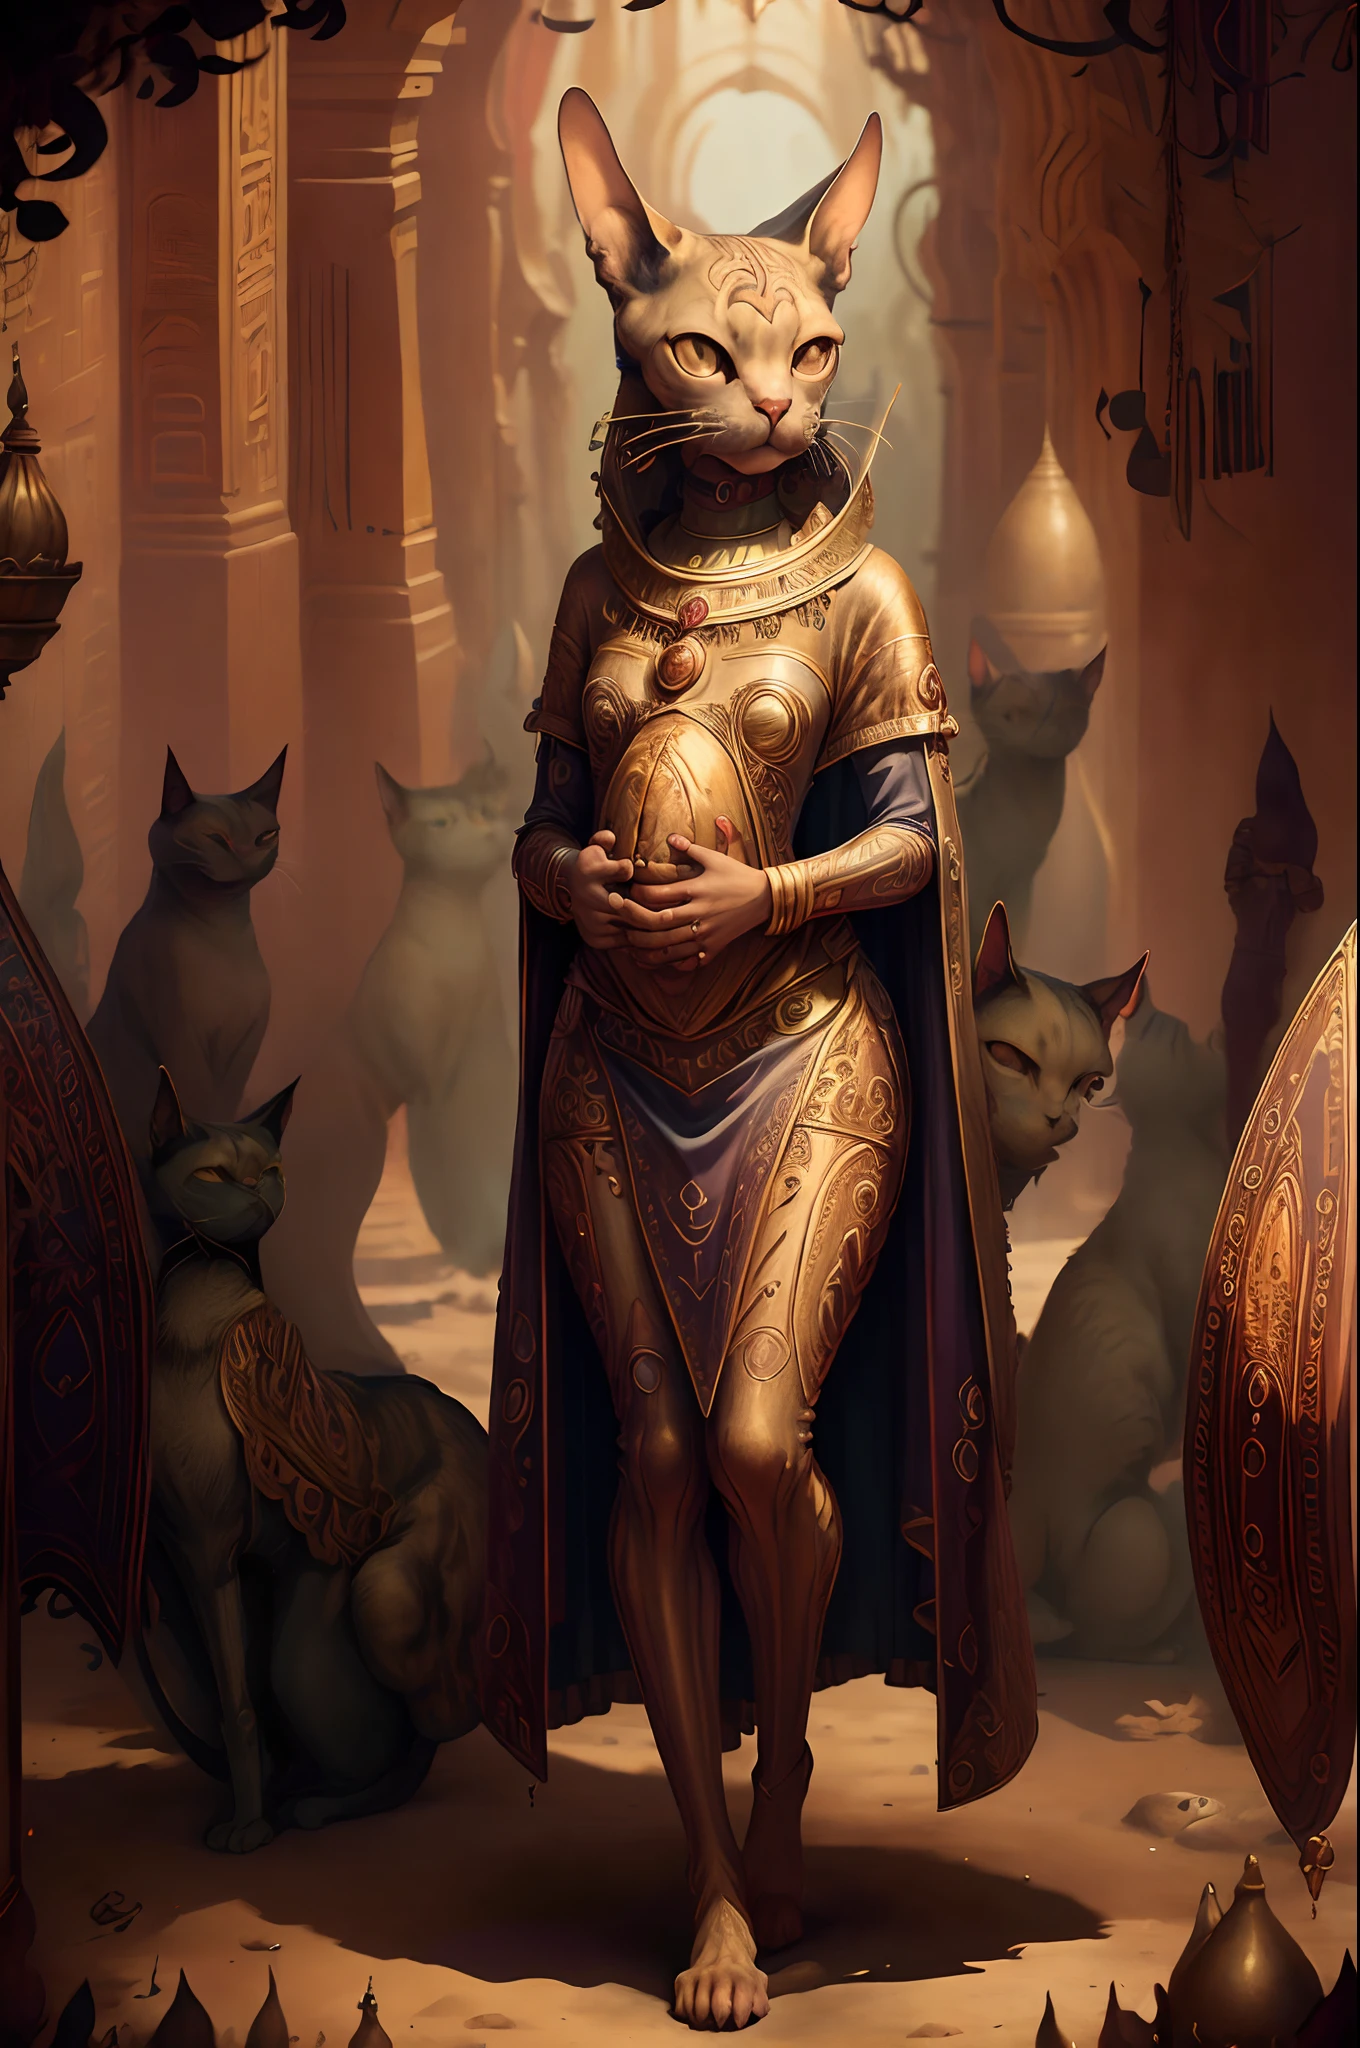 melhor qualidade,(Obra de arte:1.2), 
Antigo Egito AI, gato cornish rex,  criaturas de fantasia,corpo todo, cenário. retrato simétrico centrado, realista